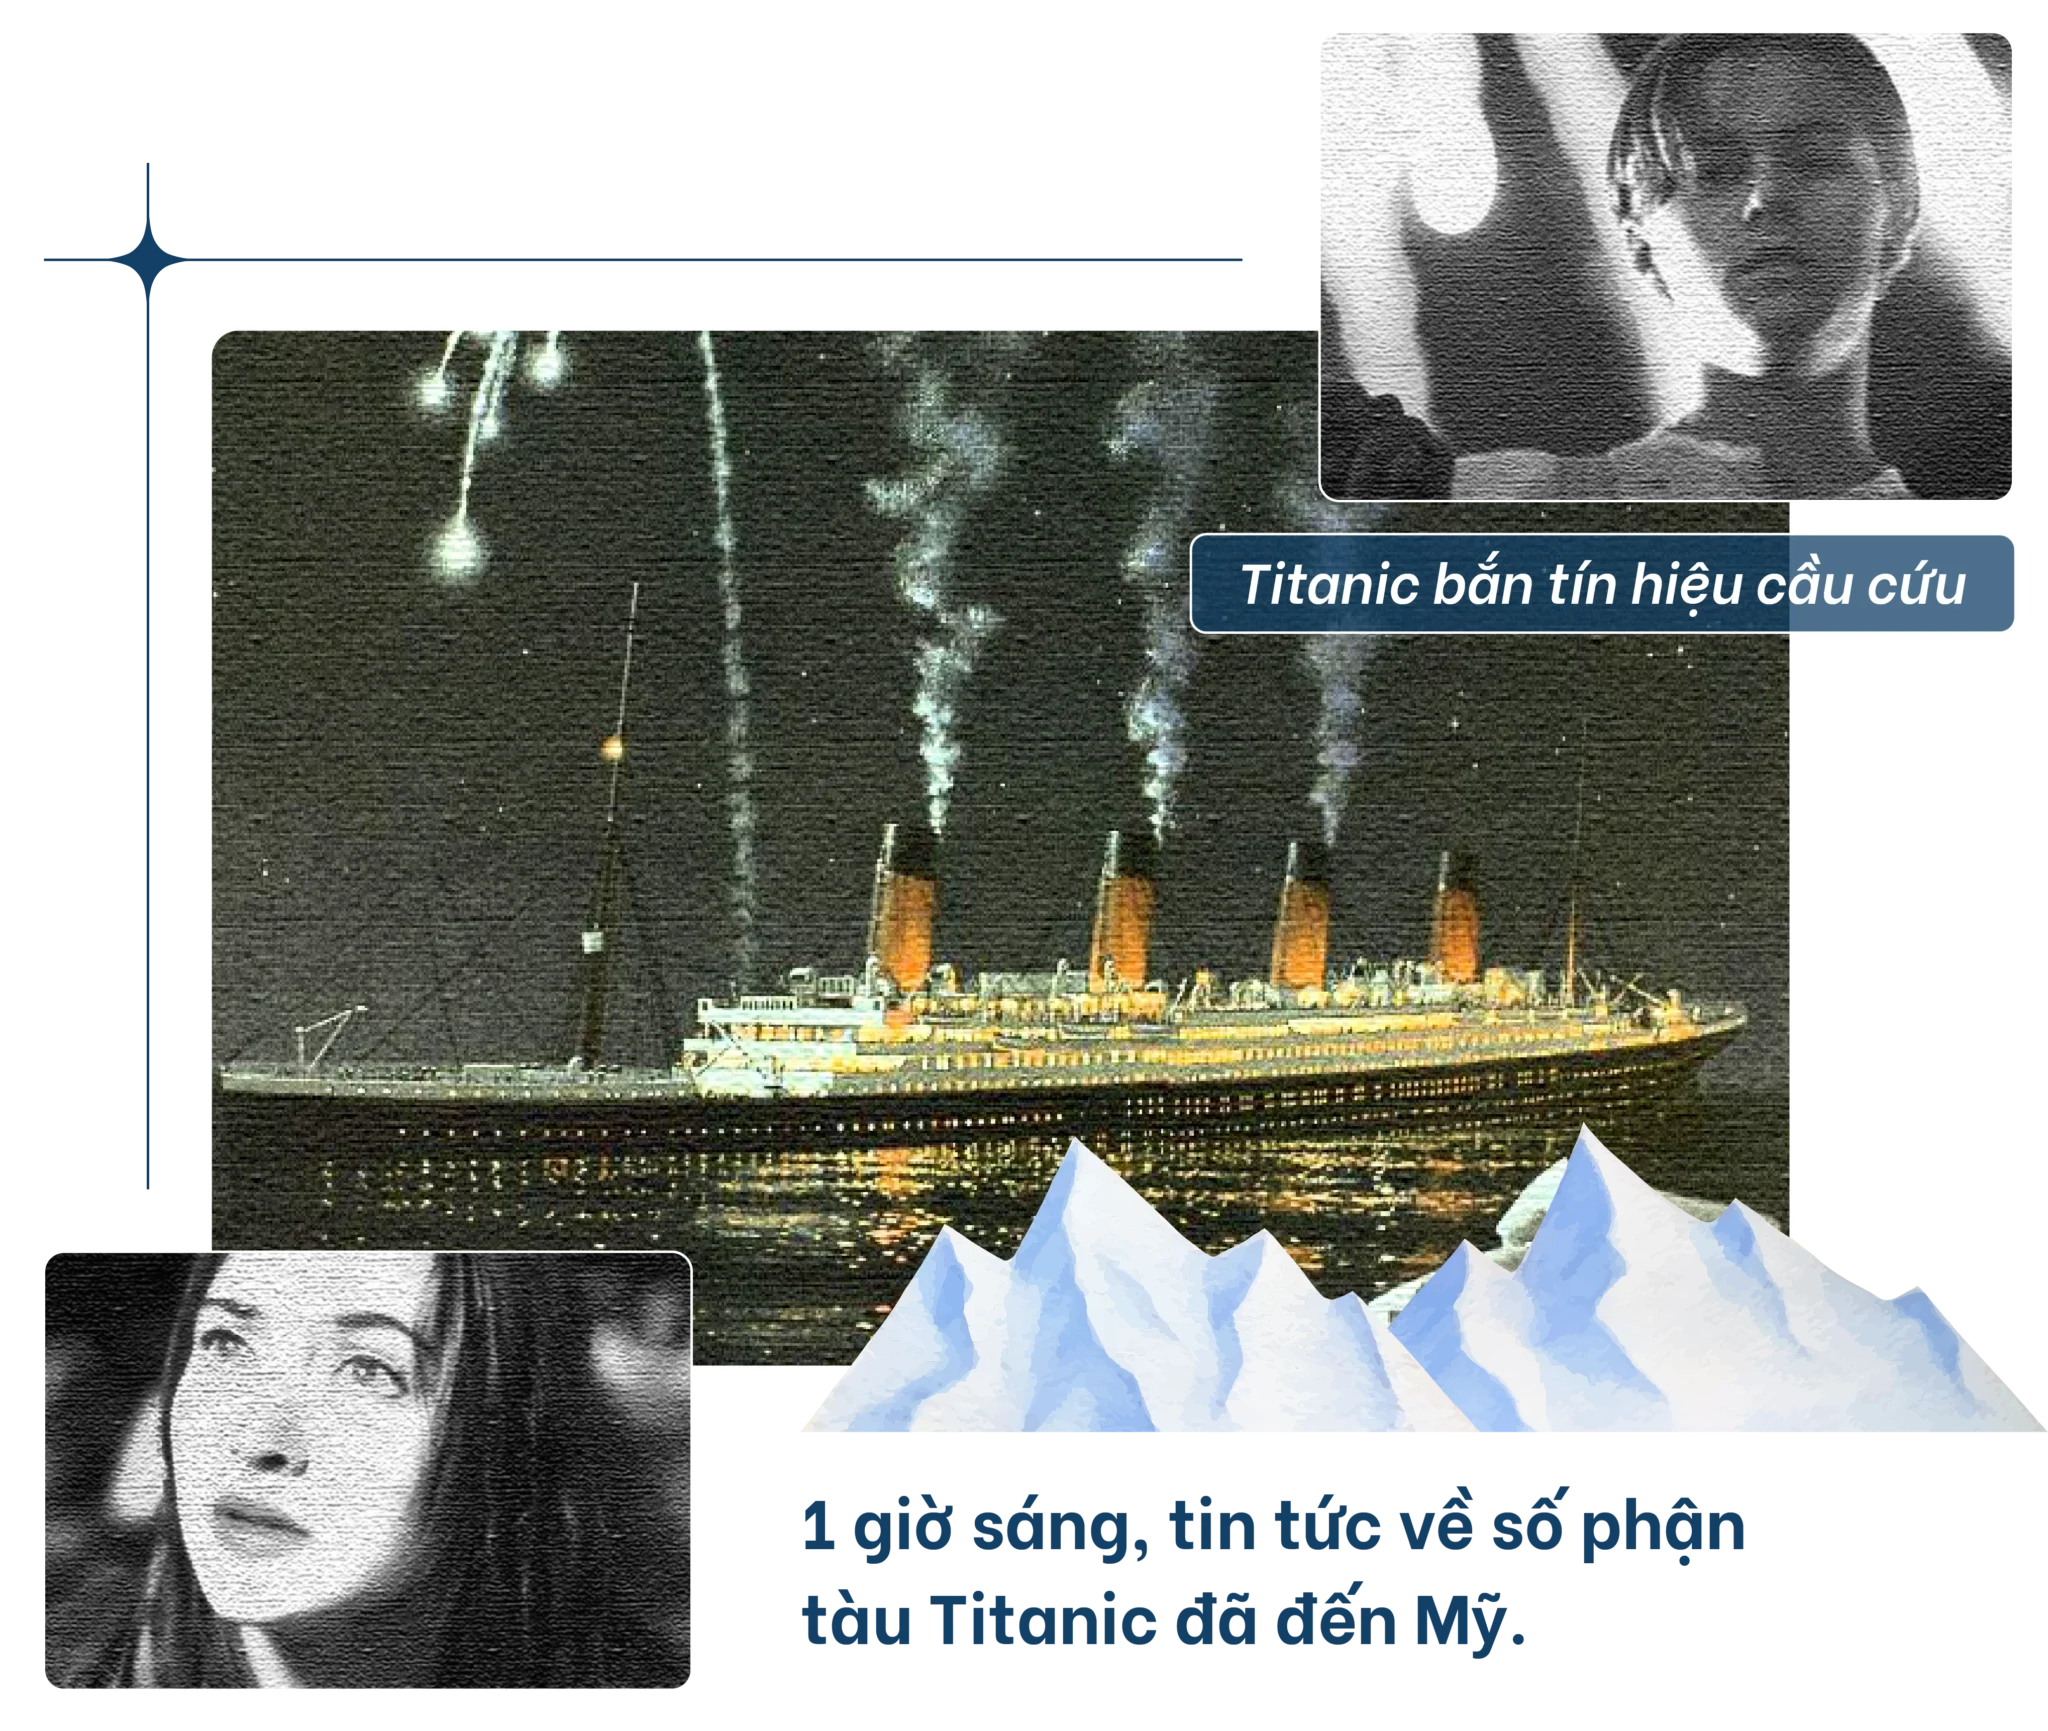 Titanic bắn tín hiệu cầu cứu